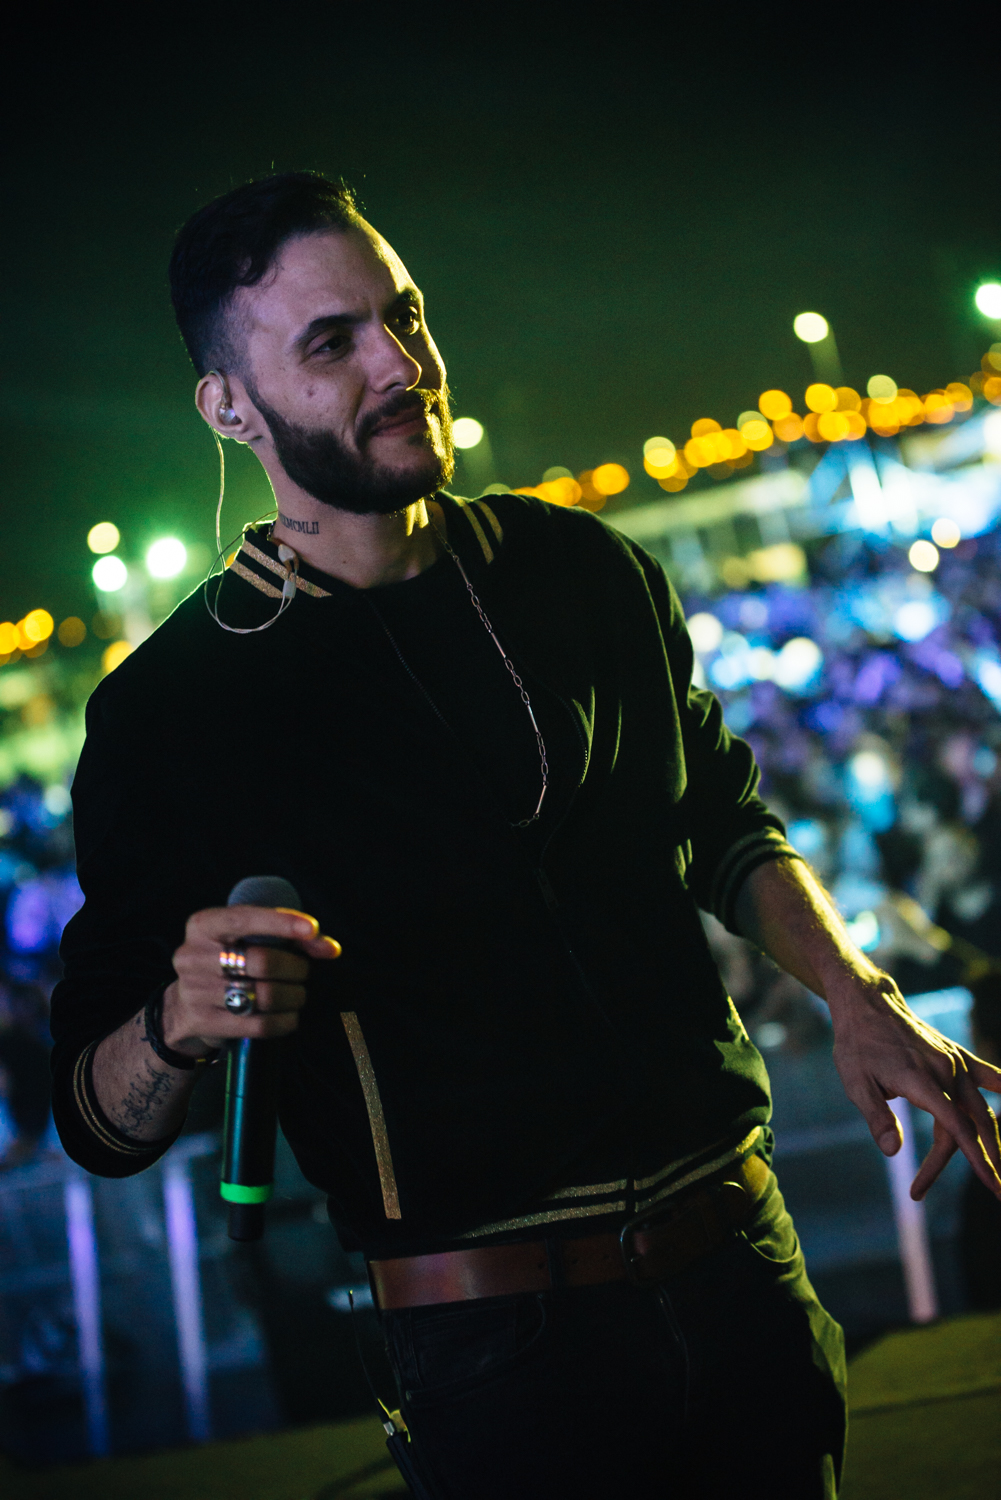 دبي تستضيف مهرجان وصلة للموسيقى العربيّة البديلة 2019